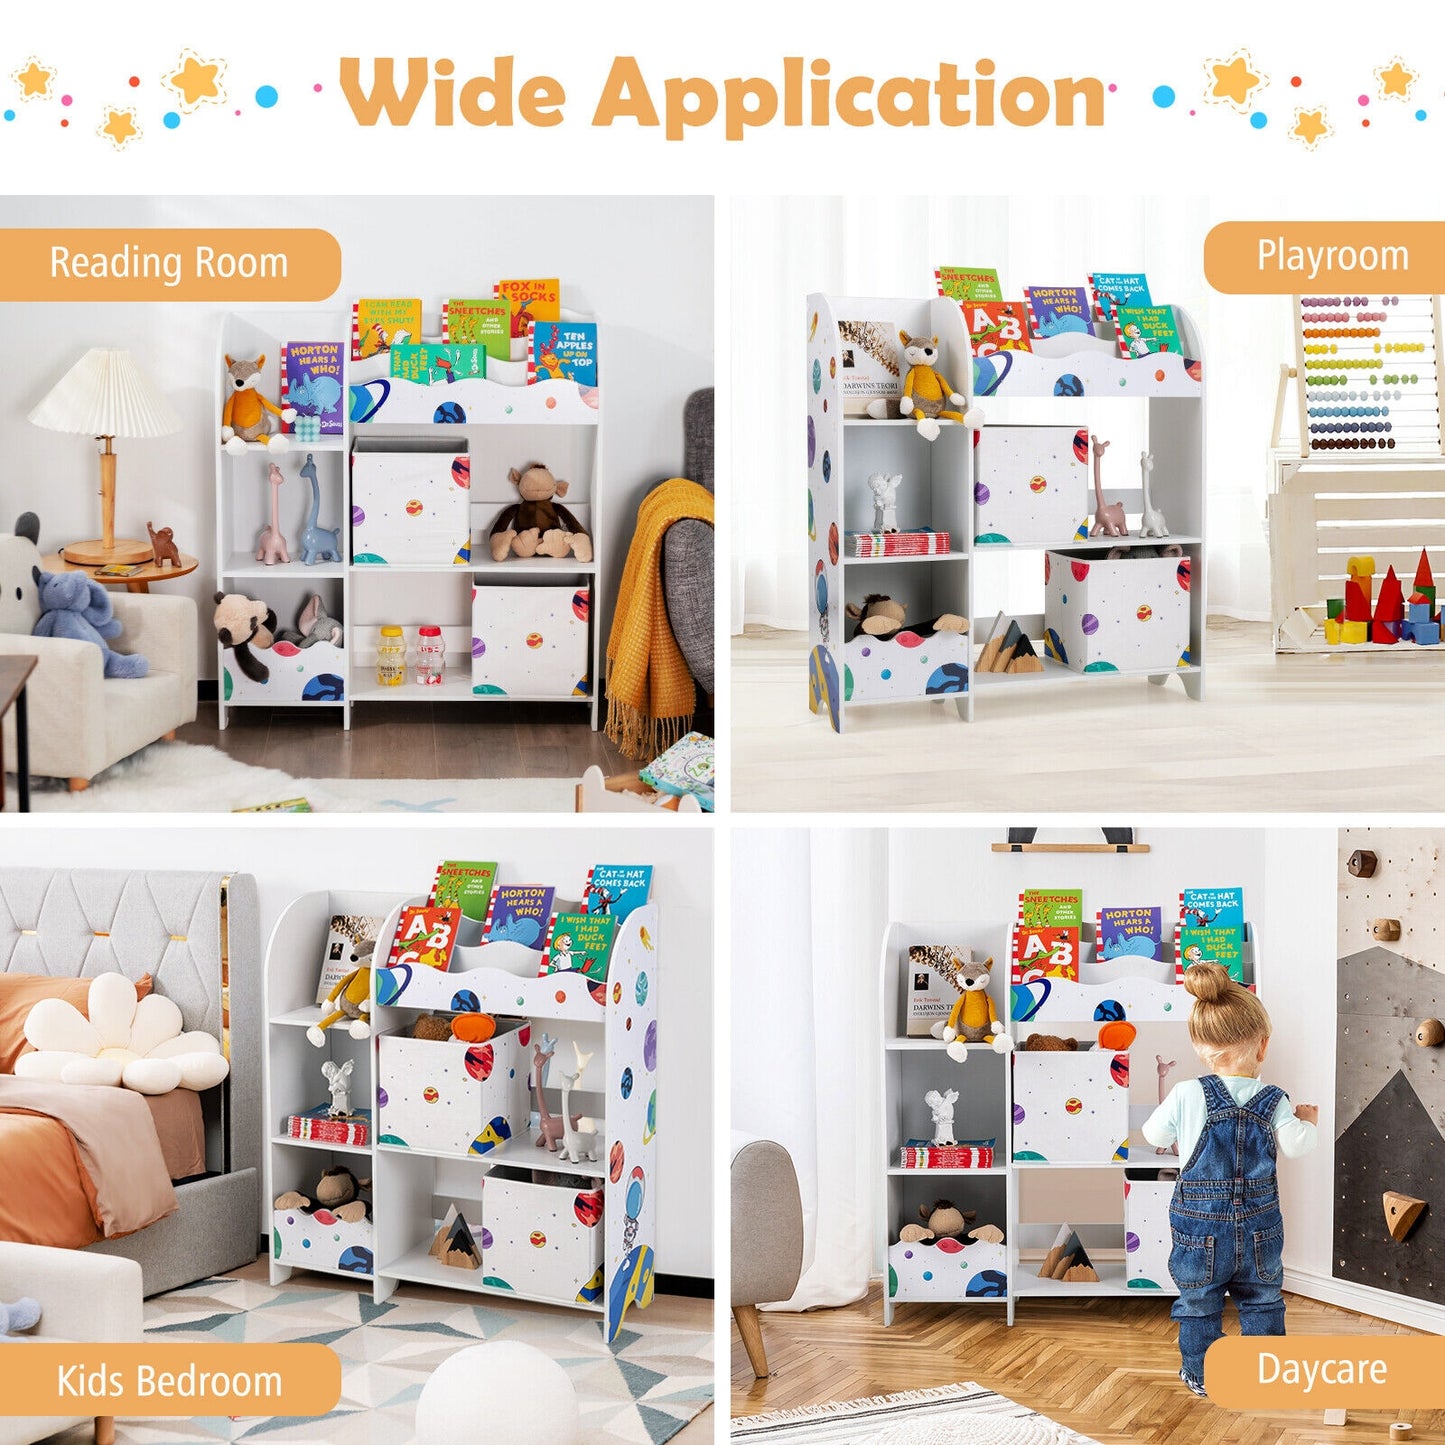 Kids Toy and Book Organizer Children Wooden Storage Cabinet with Storage Bins